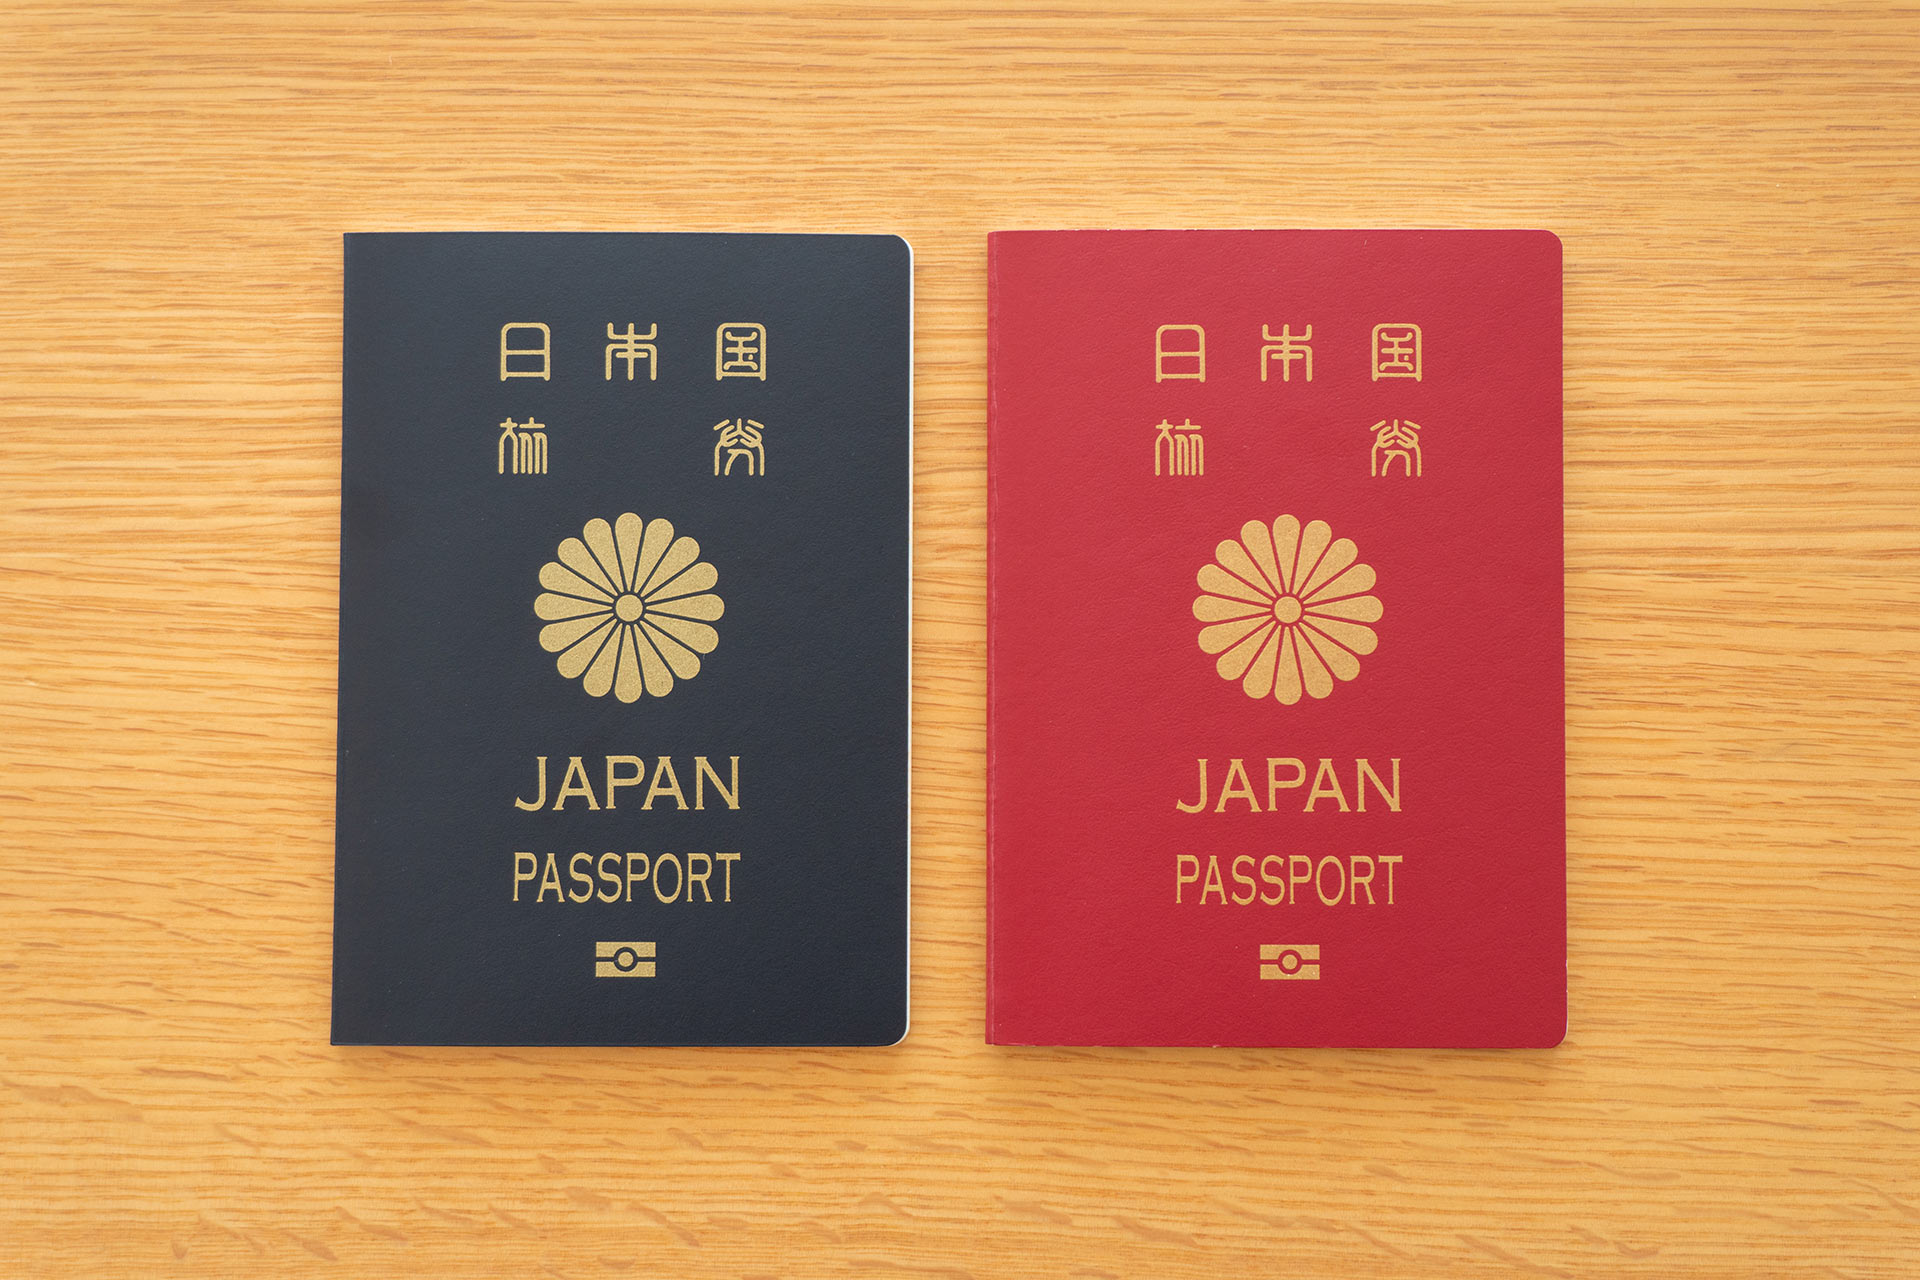 ハワイで結婚後初めて日本のパスポートを更新 ねねのハワイブログ